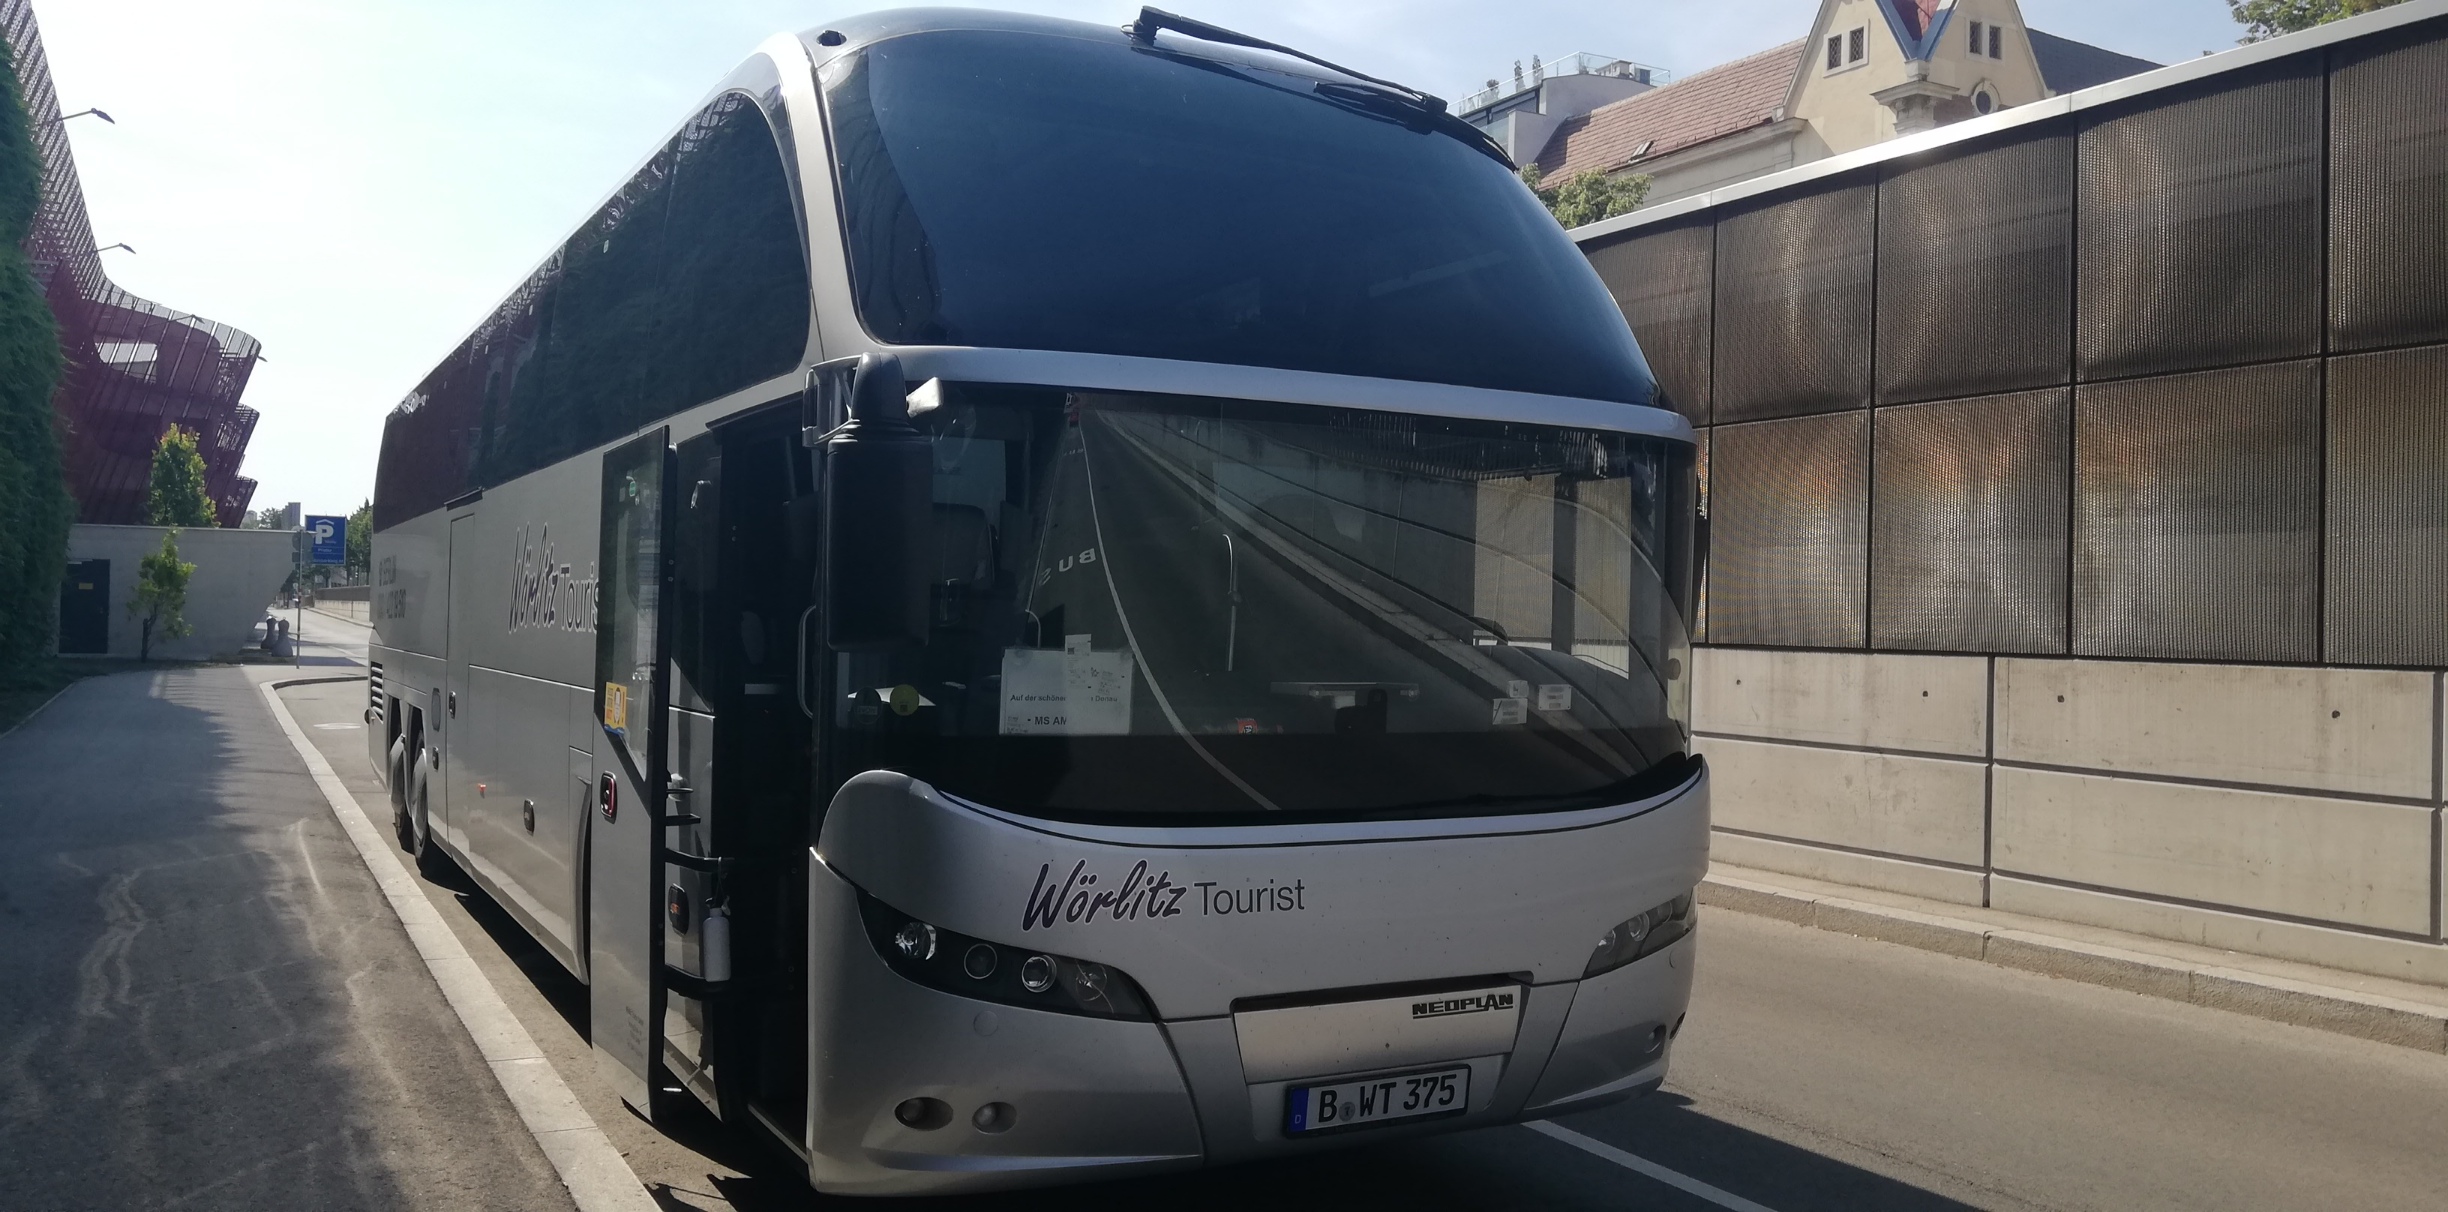 Ein Reisebus von Wörlitz Tourist aus Berlin macht Station in Wien